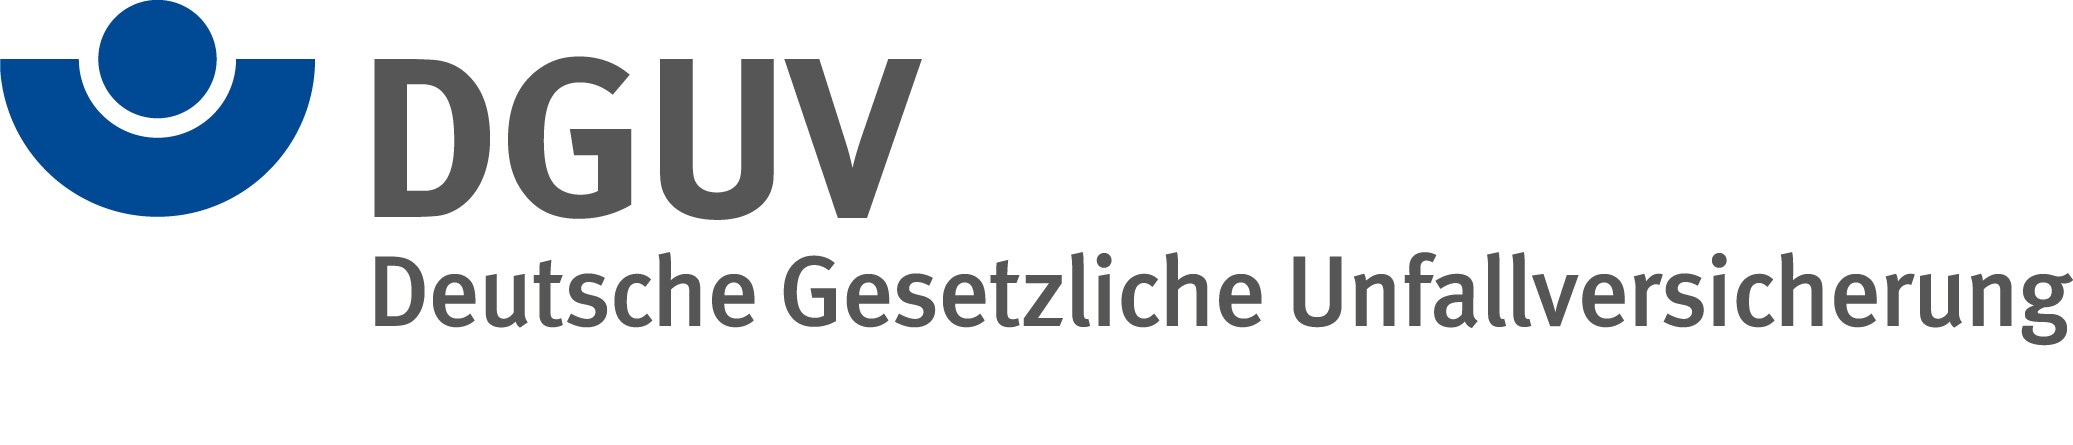 DGUV-Logo